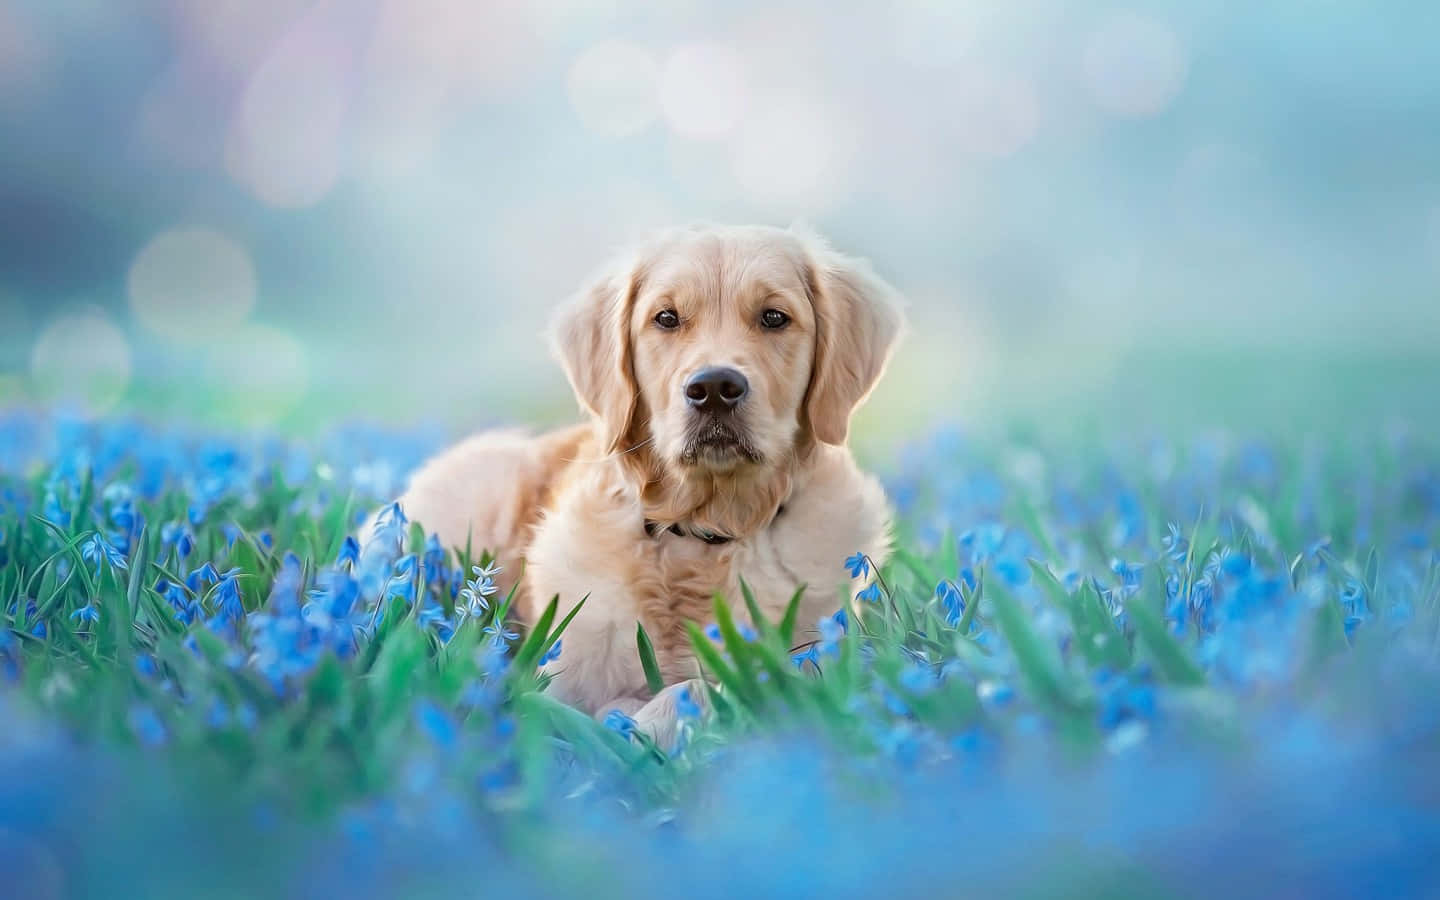 A sweet golden retriever pup.